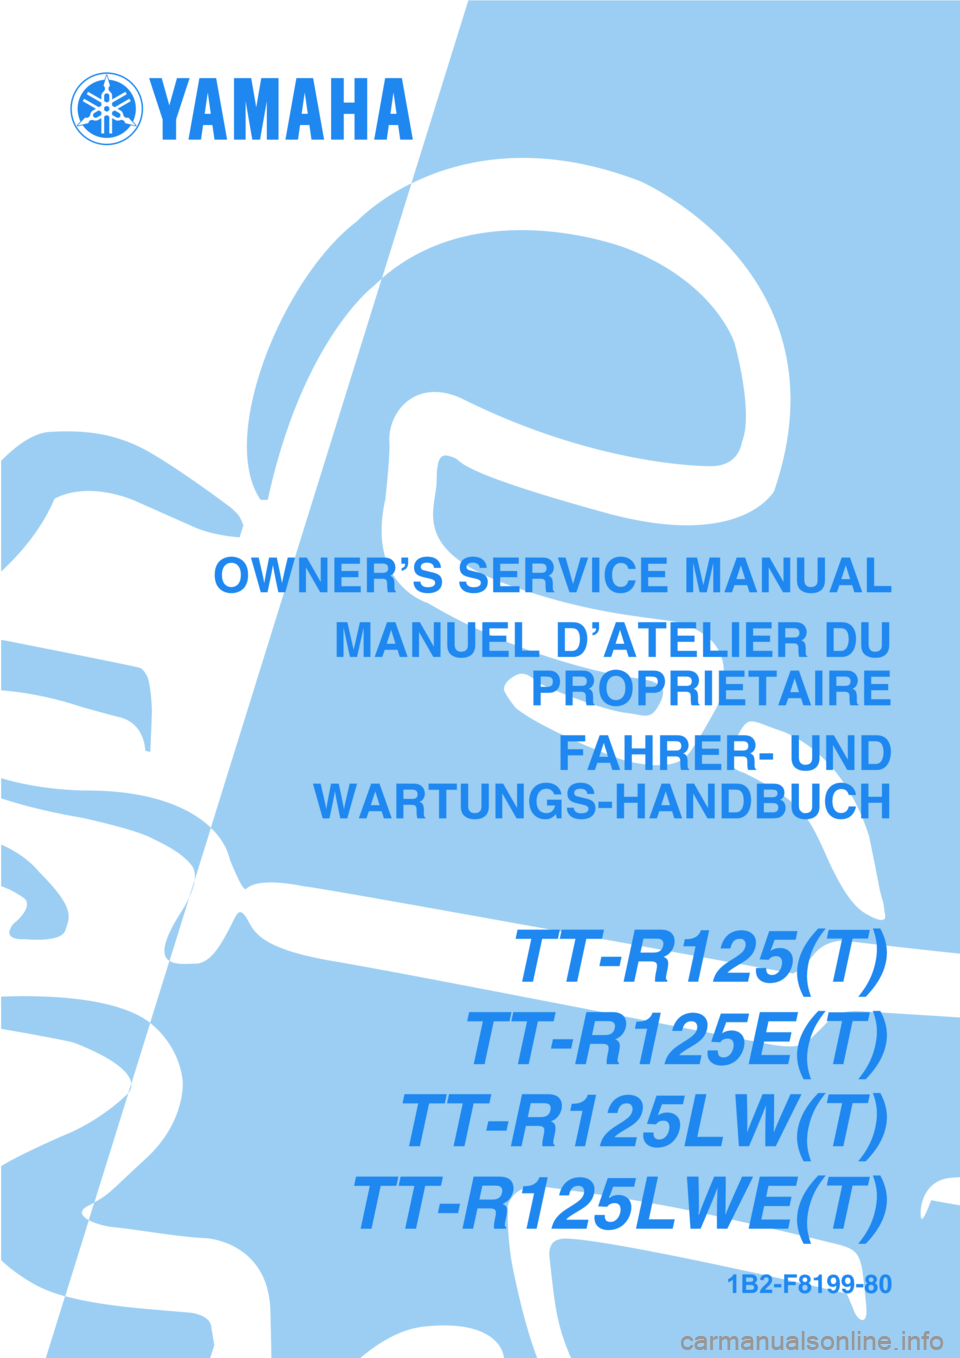 YAMAHA TTR125 2005  Betriebsanleitungen (in German) 1B2-F8199-80
OWNER’S SERVICE MANUALMANUEL D’ATELIER DU PROPRIETAIRE
FAHRER- UND
WARTUNGS-HANDBUCH
TT-R125(T)
TT-R125E(T)
TT-R125LW(T)
TT-R125LWE(T) 